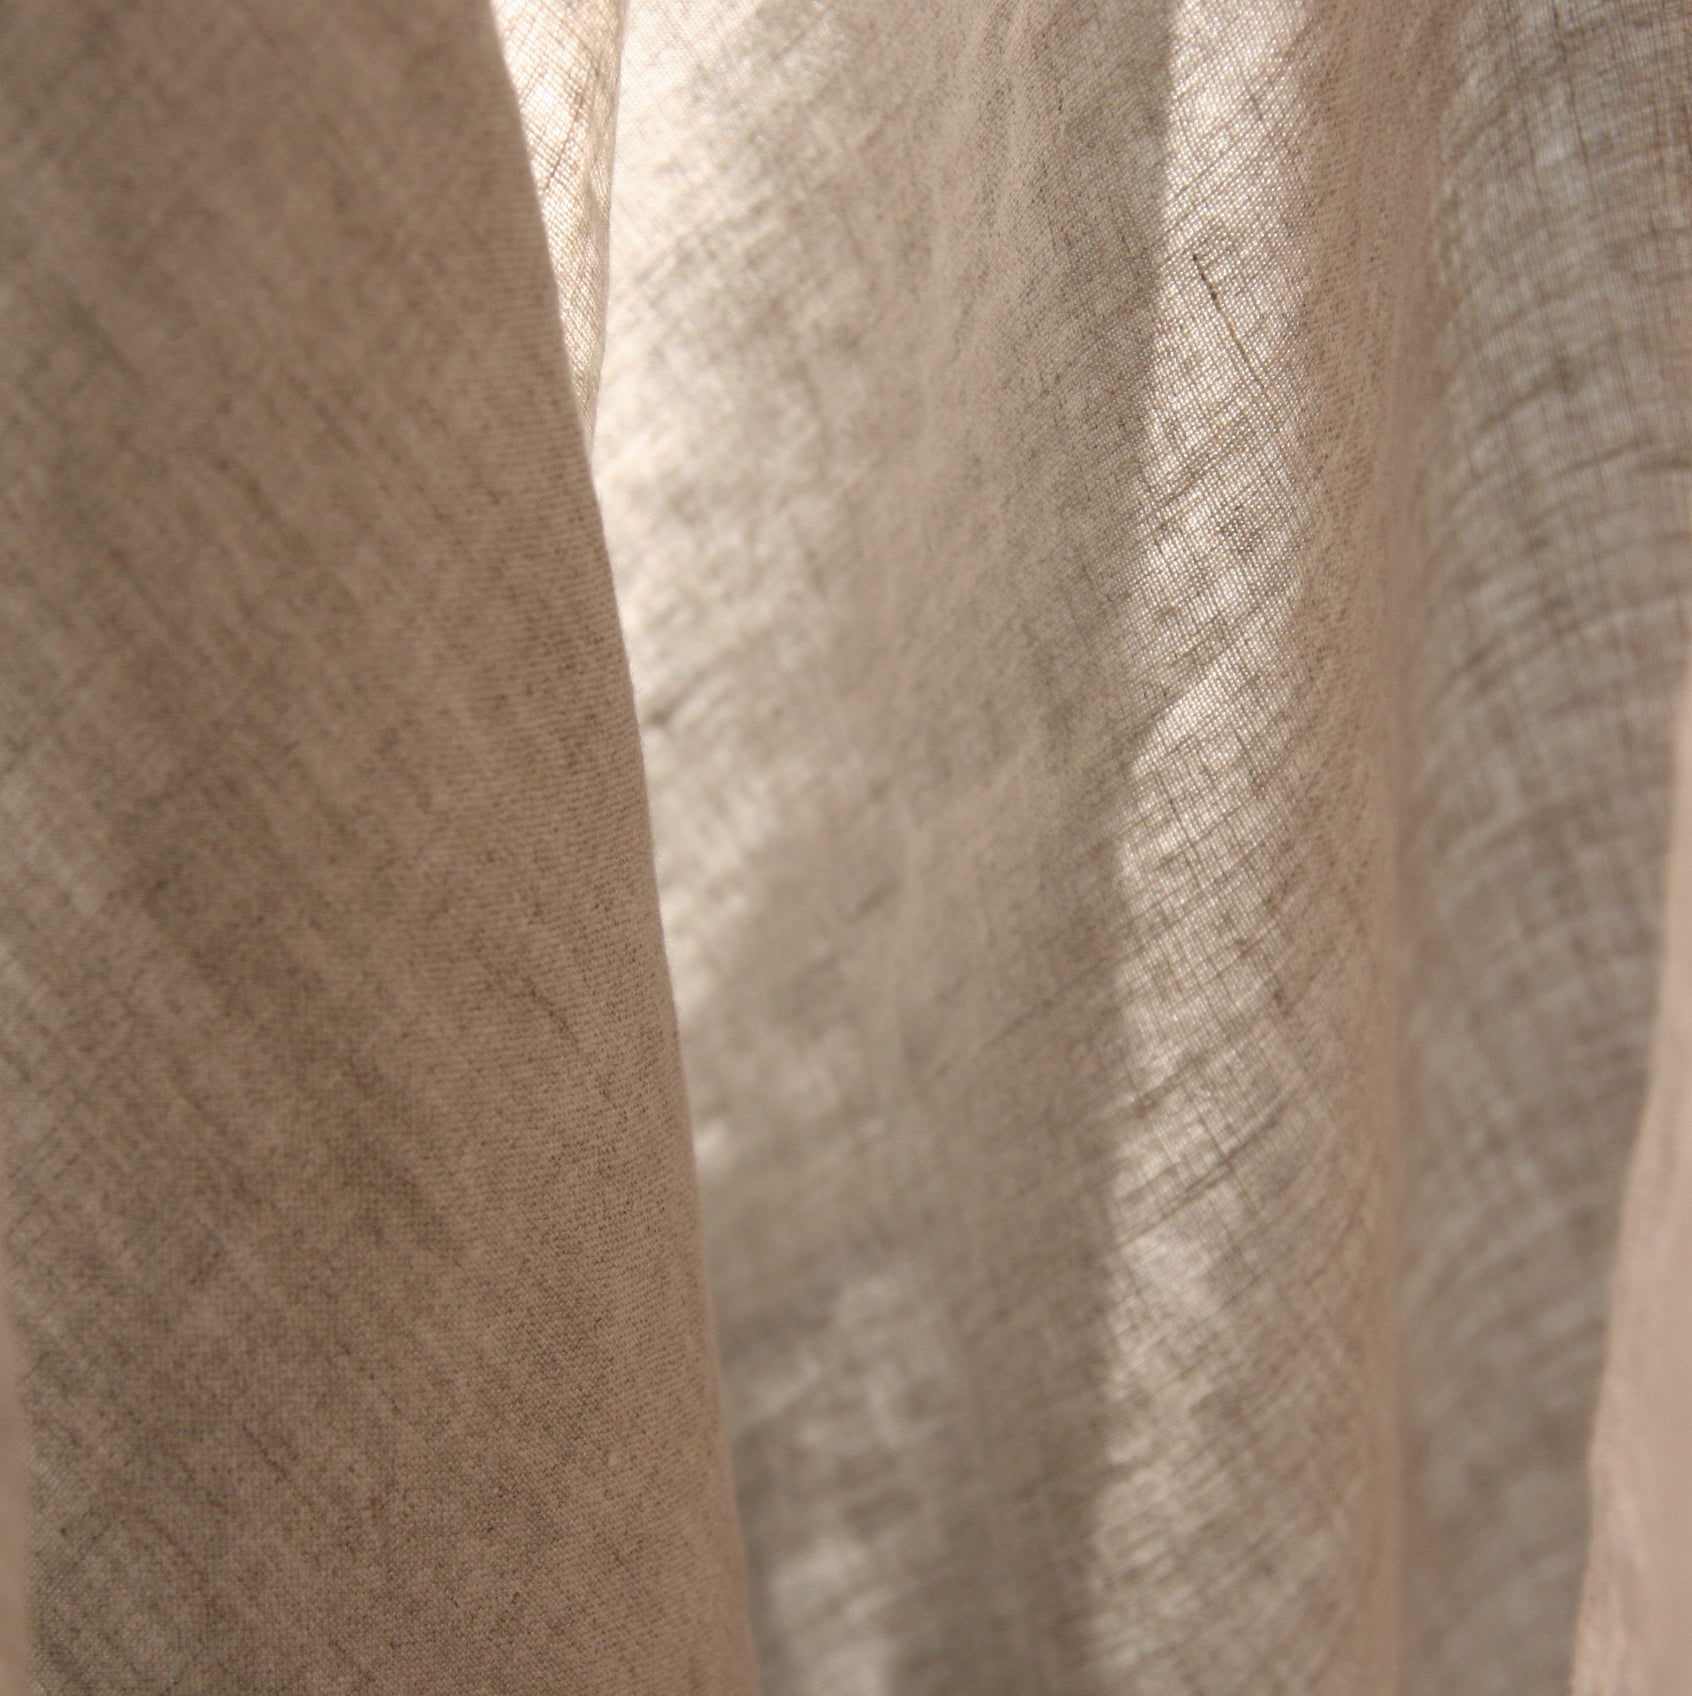 Detalle de Juego de sábanas de lino natural con caída suave.